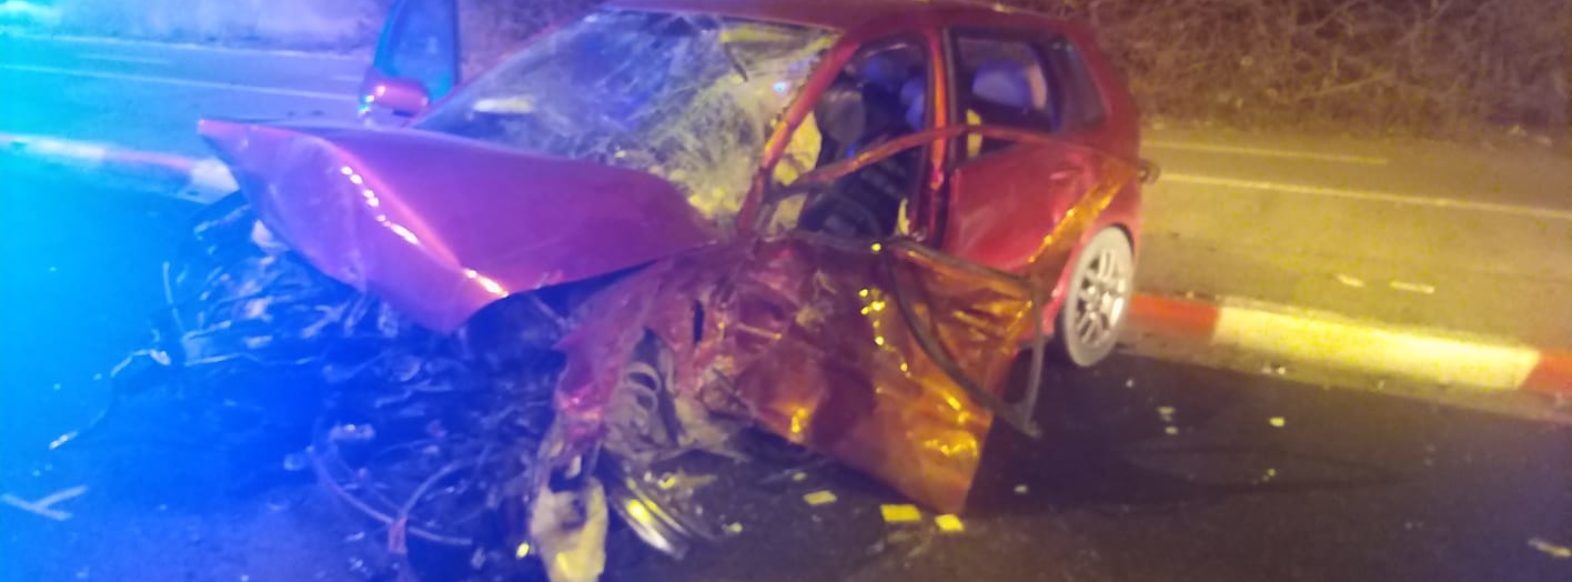 תאונת דרכים בקריית ביאליק, ארבעה פצועים פונו לבית החולים